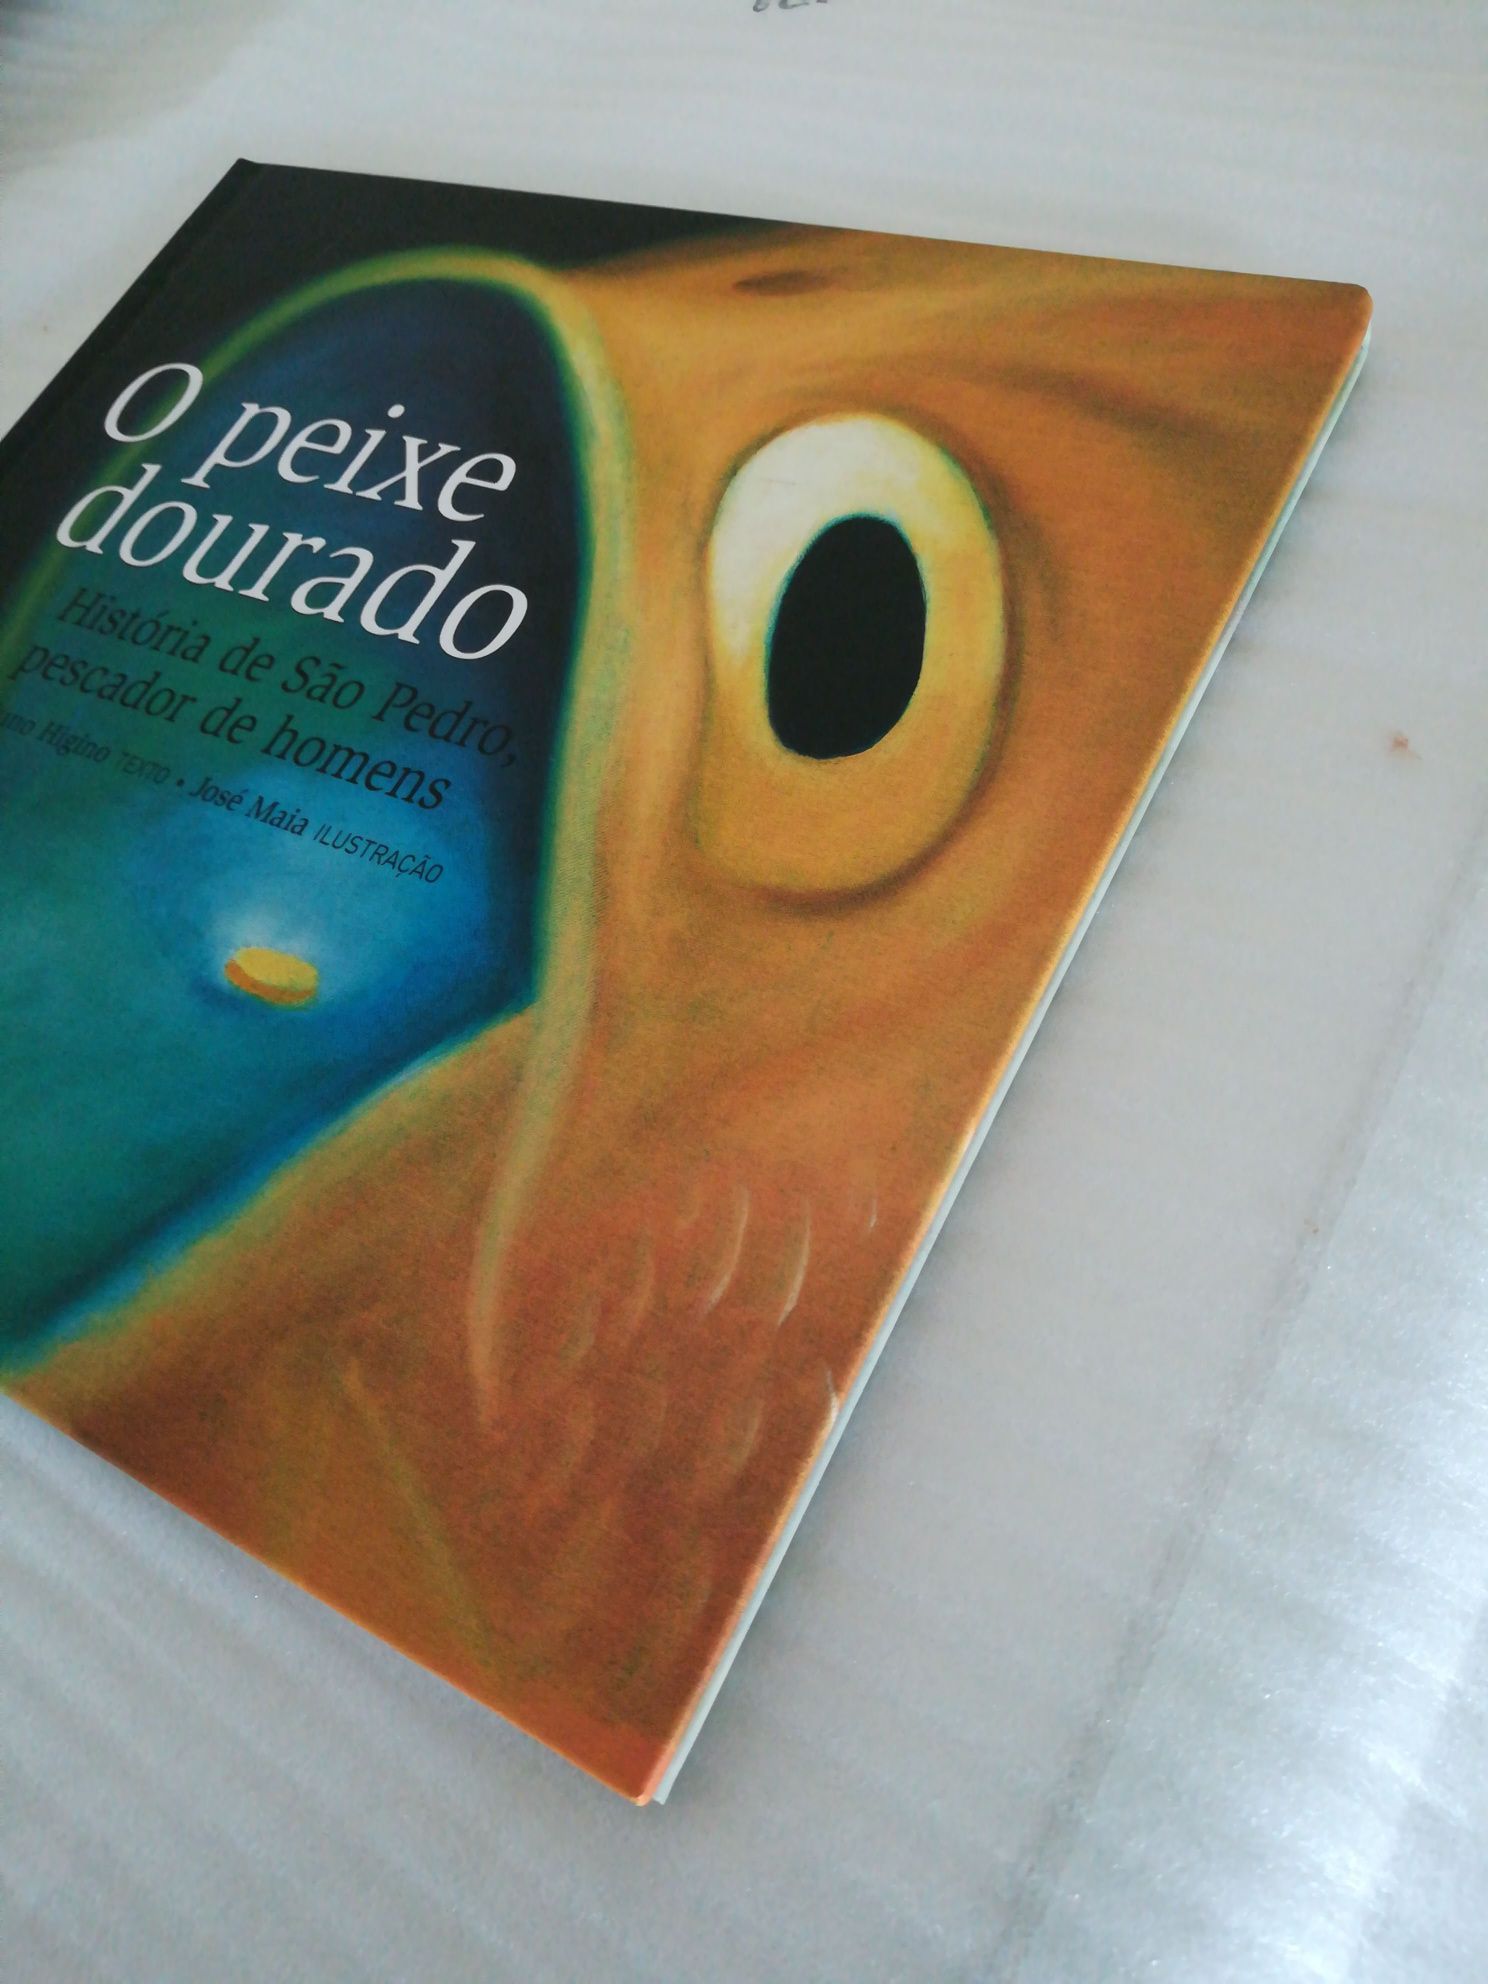 Livro infantil "O peixe dourado" de Nuno Higino